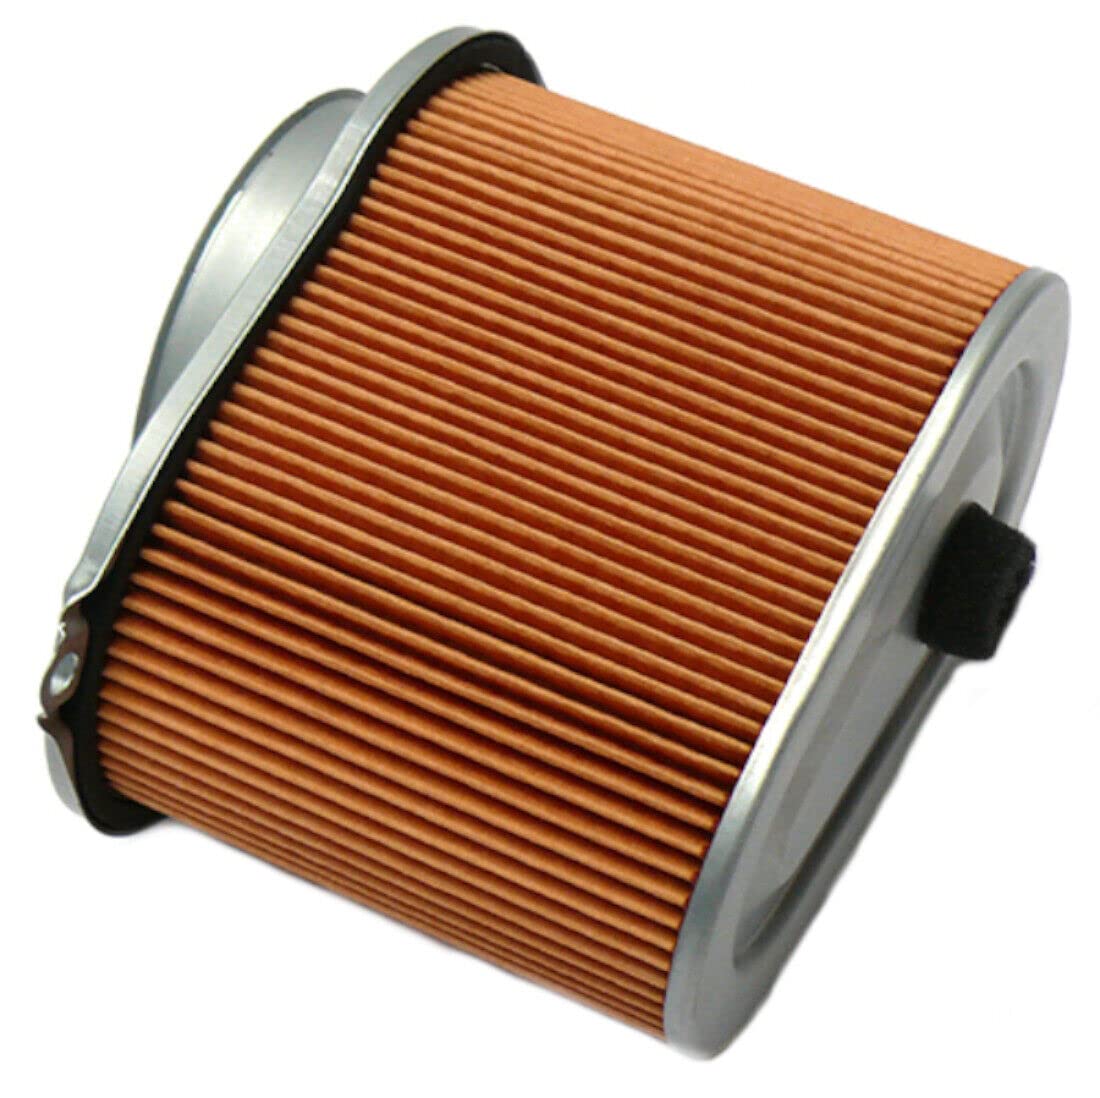 Luftfilter Air filter Hinten Rear für SUZUKI VS 600 700 750 800 GL #13780-38A50 von ItalyRacing